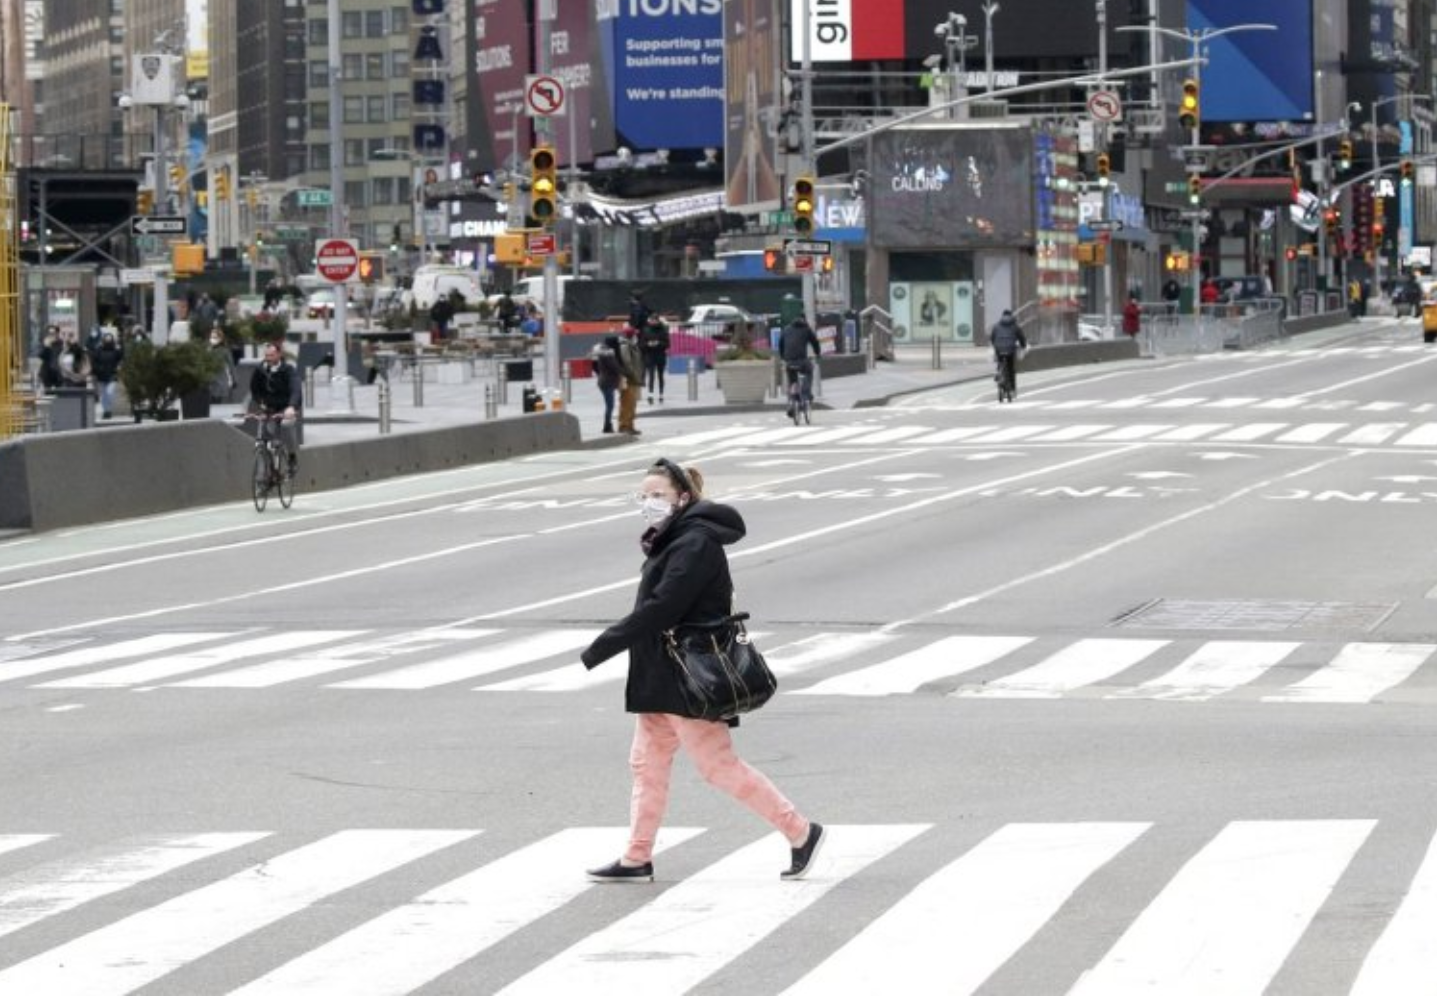 U.S. pedestrian deaths hit 40-year high